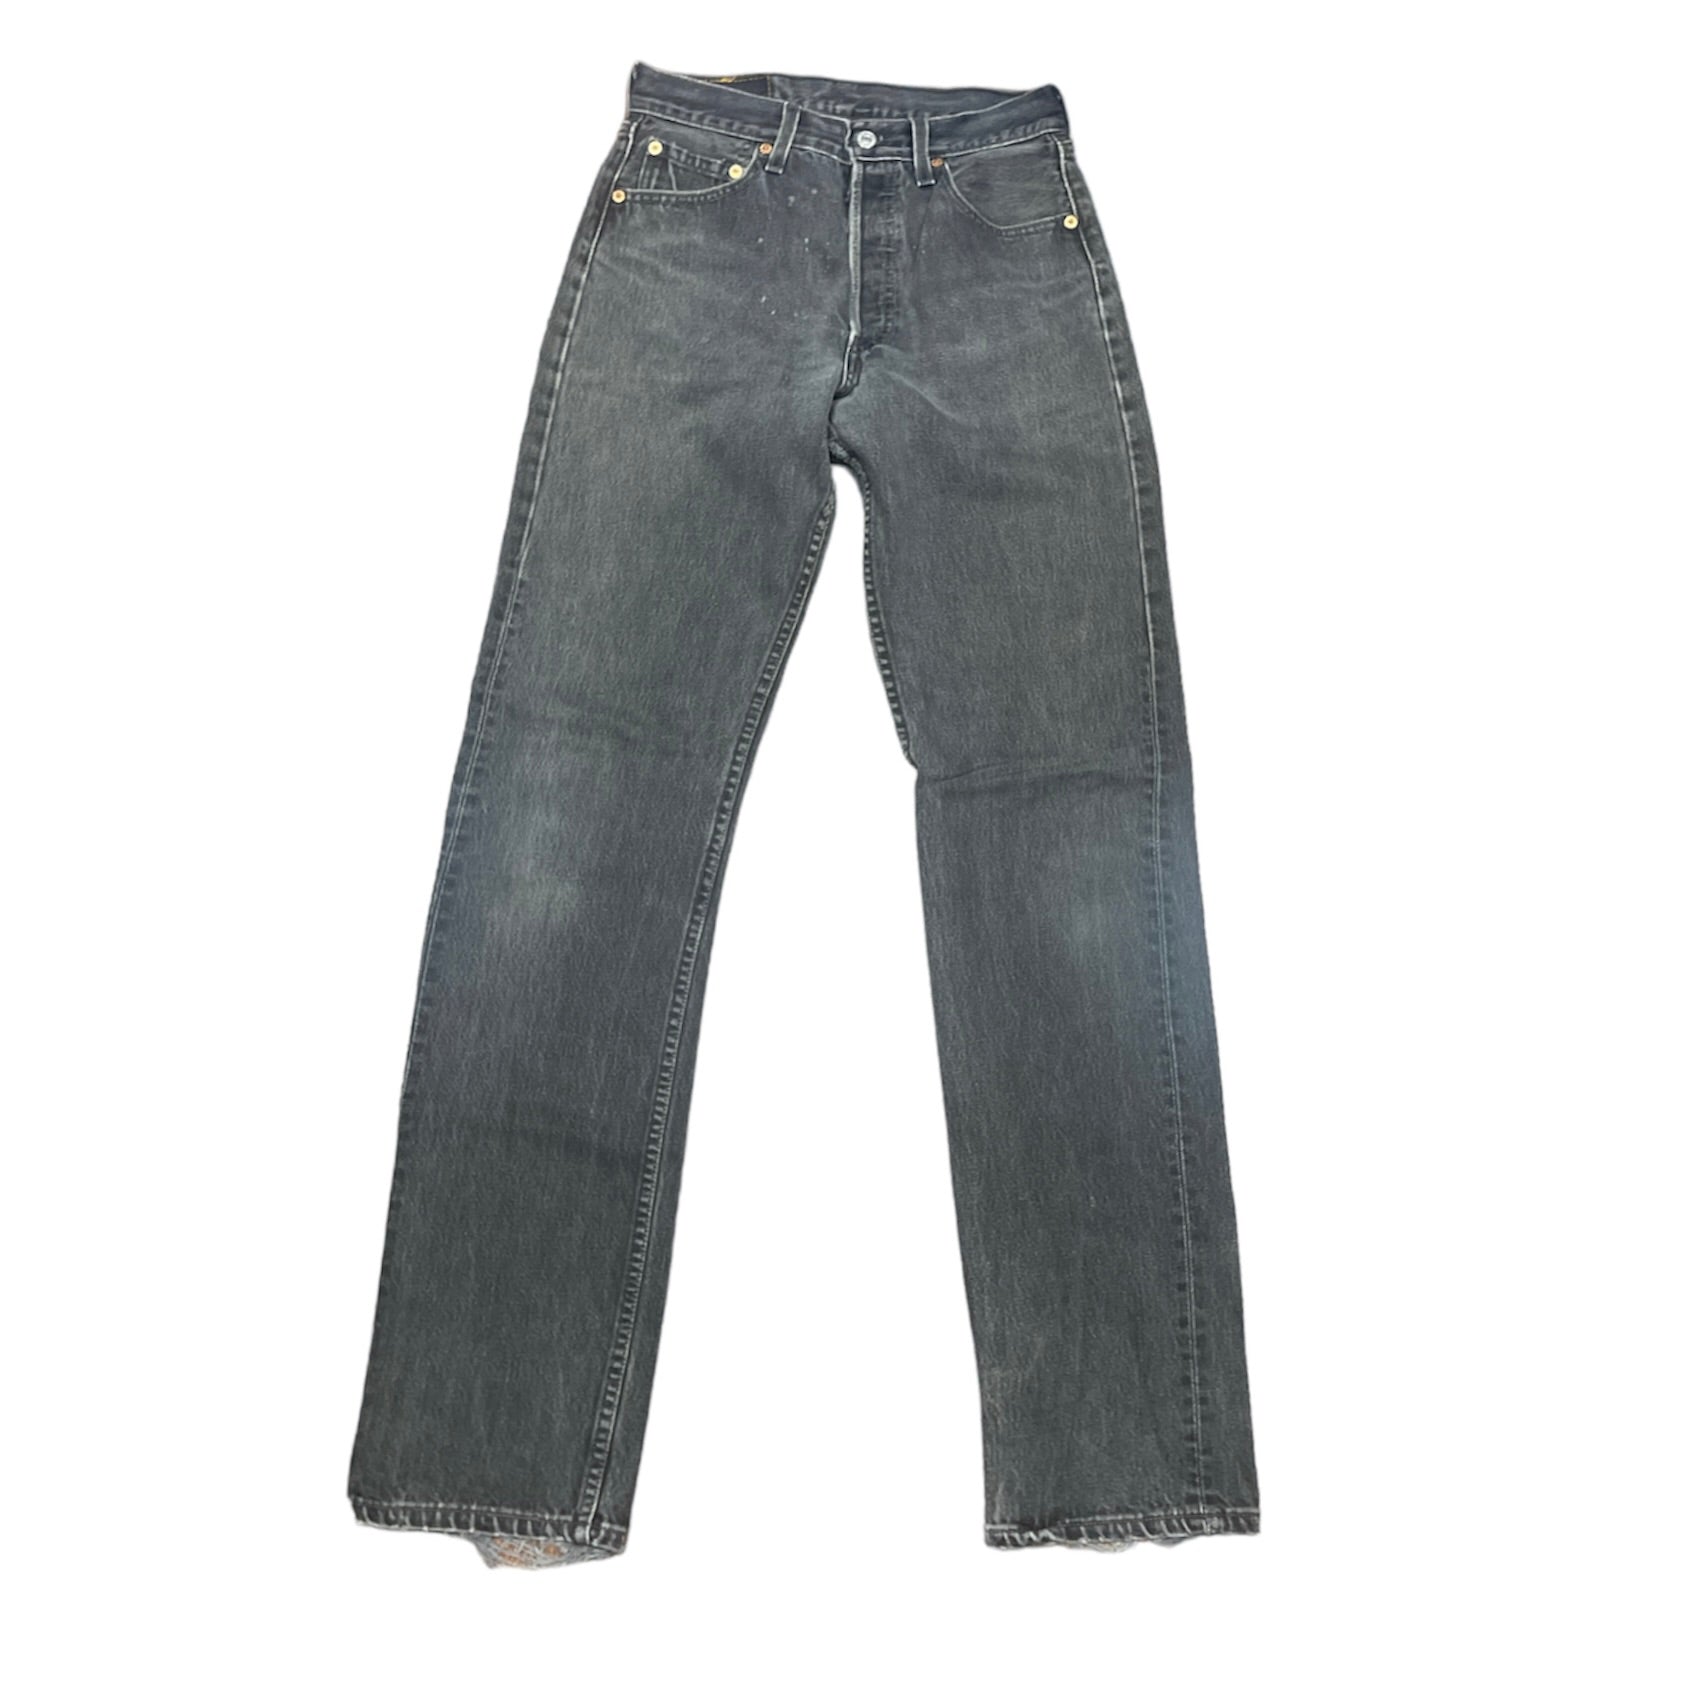 Vintage Levis 501 Black/Grey Jeans (W29/L36)